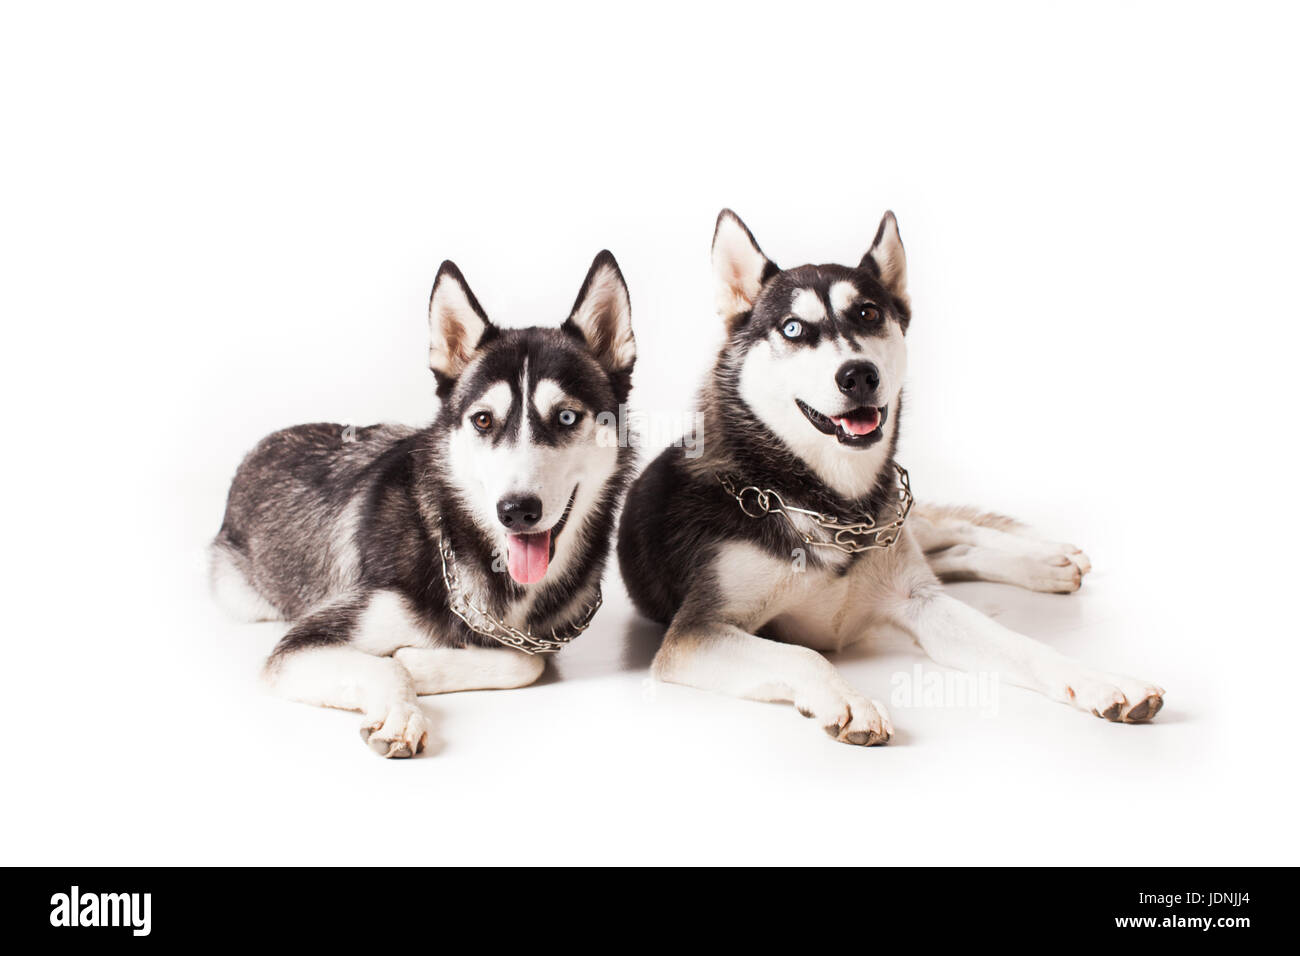 Deux chiens adultes husky avec différentes couleurs de yeux et une chaîne autour de son cou, isolated on white Banque D'Images